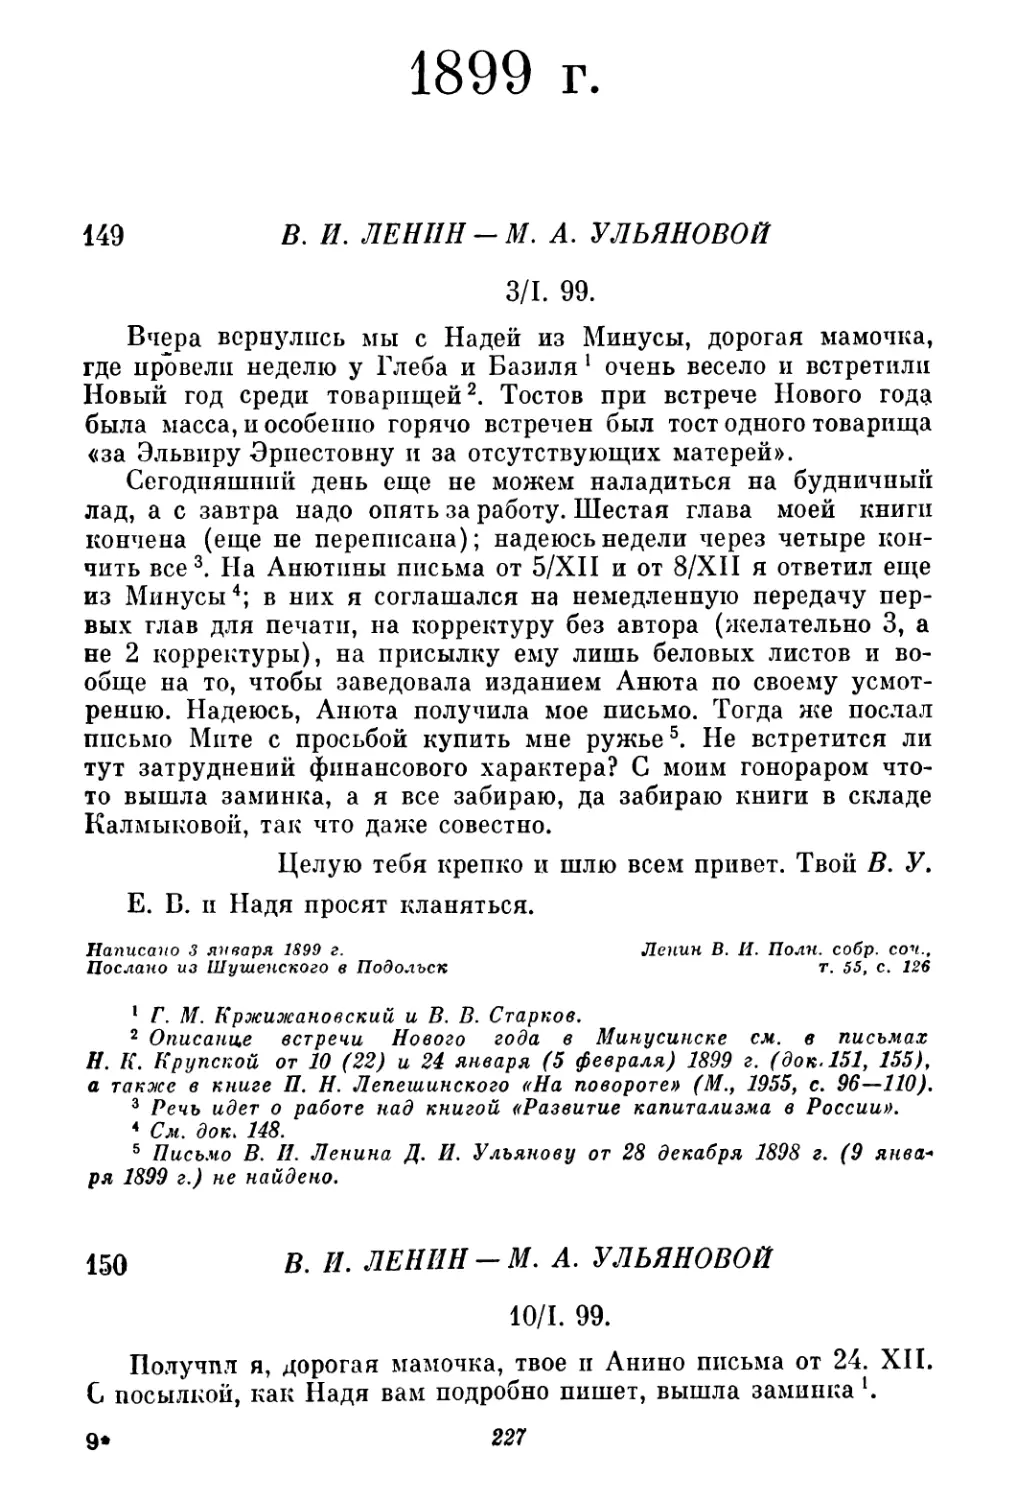 1899 г.
150. В. И. Ленин — М. А. Ульяновой. 10 января